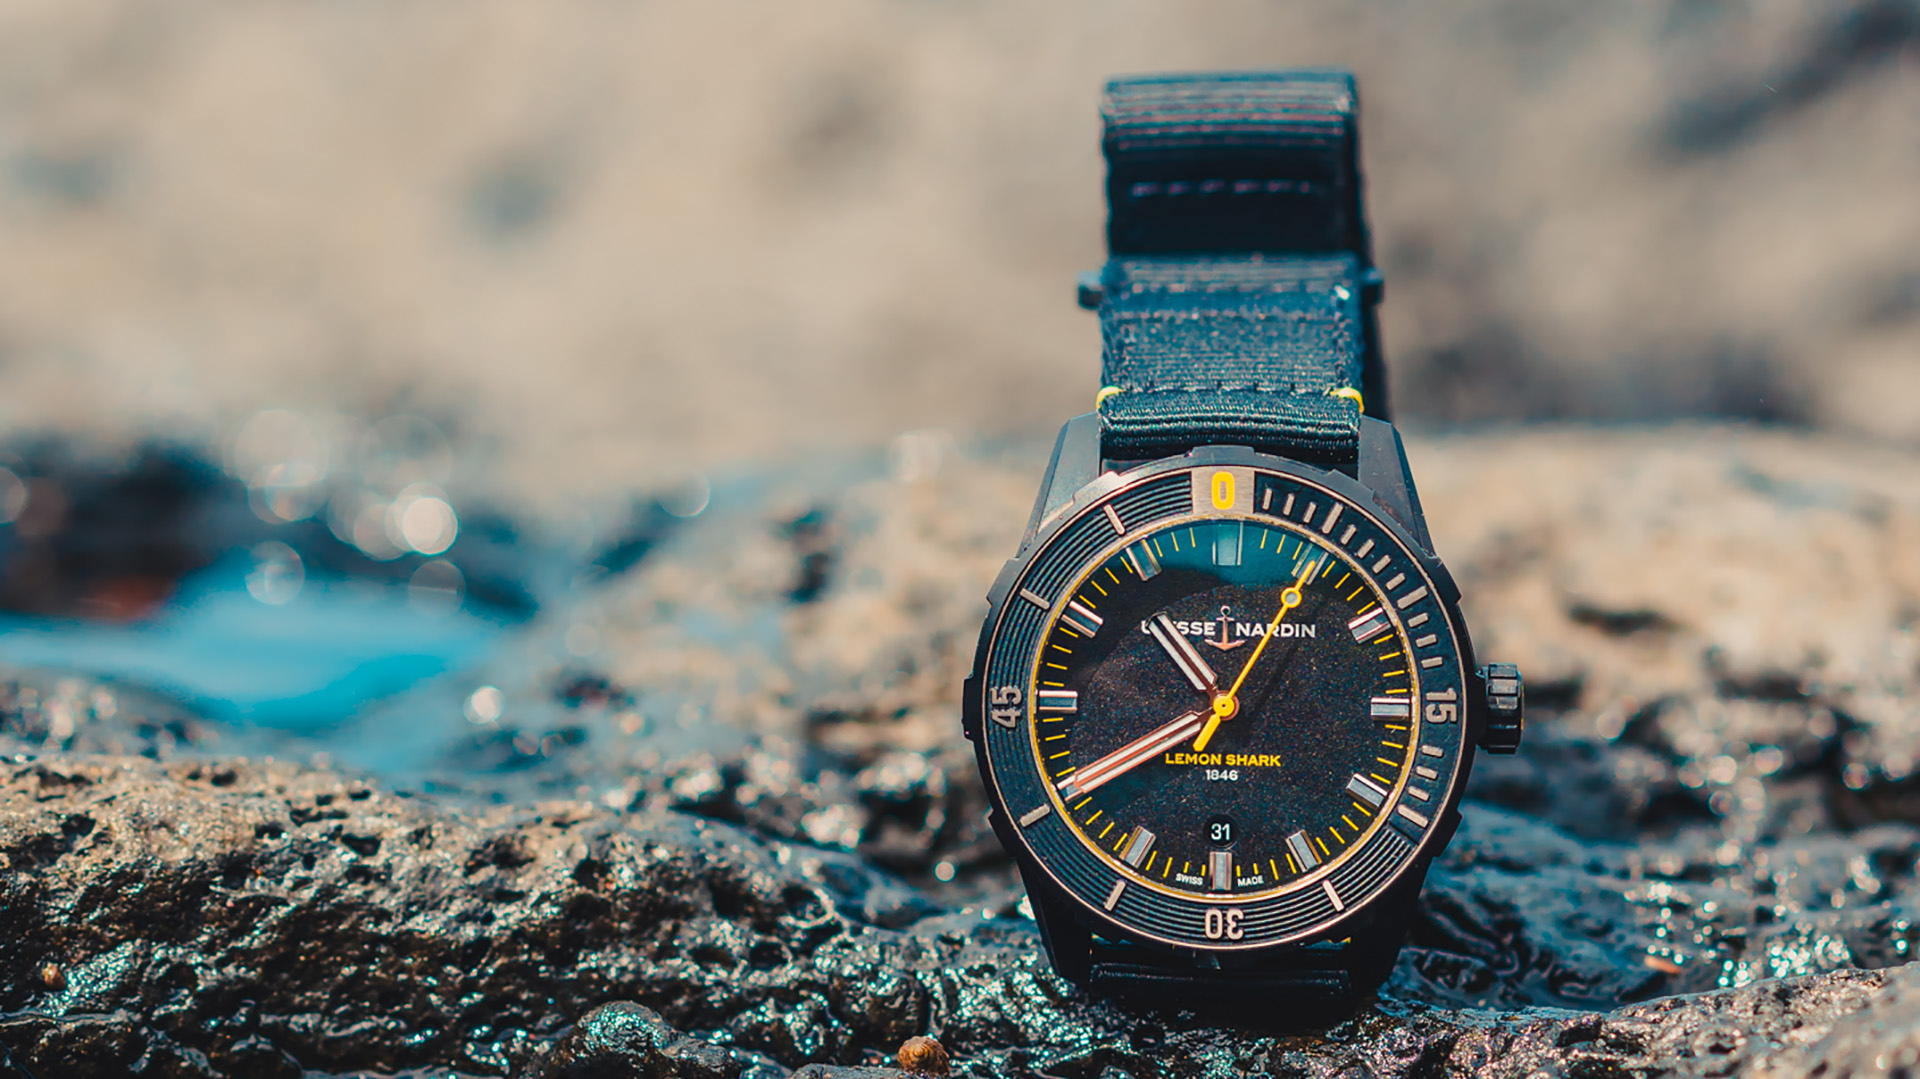 Ulysse Nardin Debuts Limited-Edition Diver Lemon Shark Watch